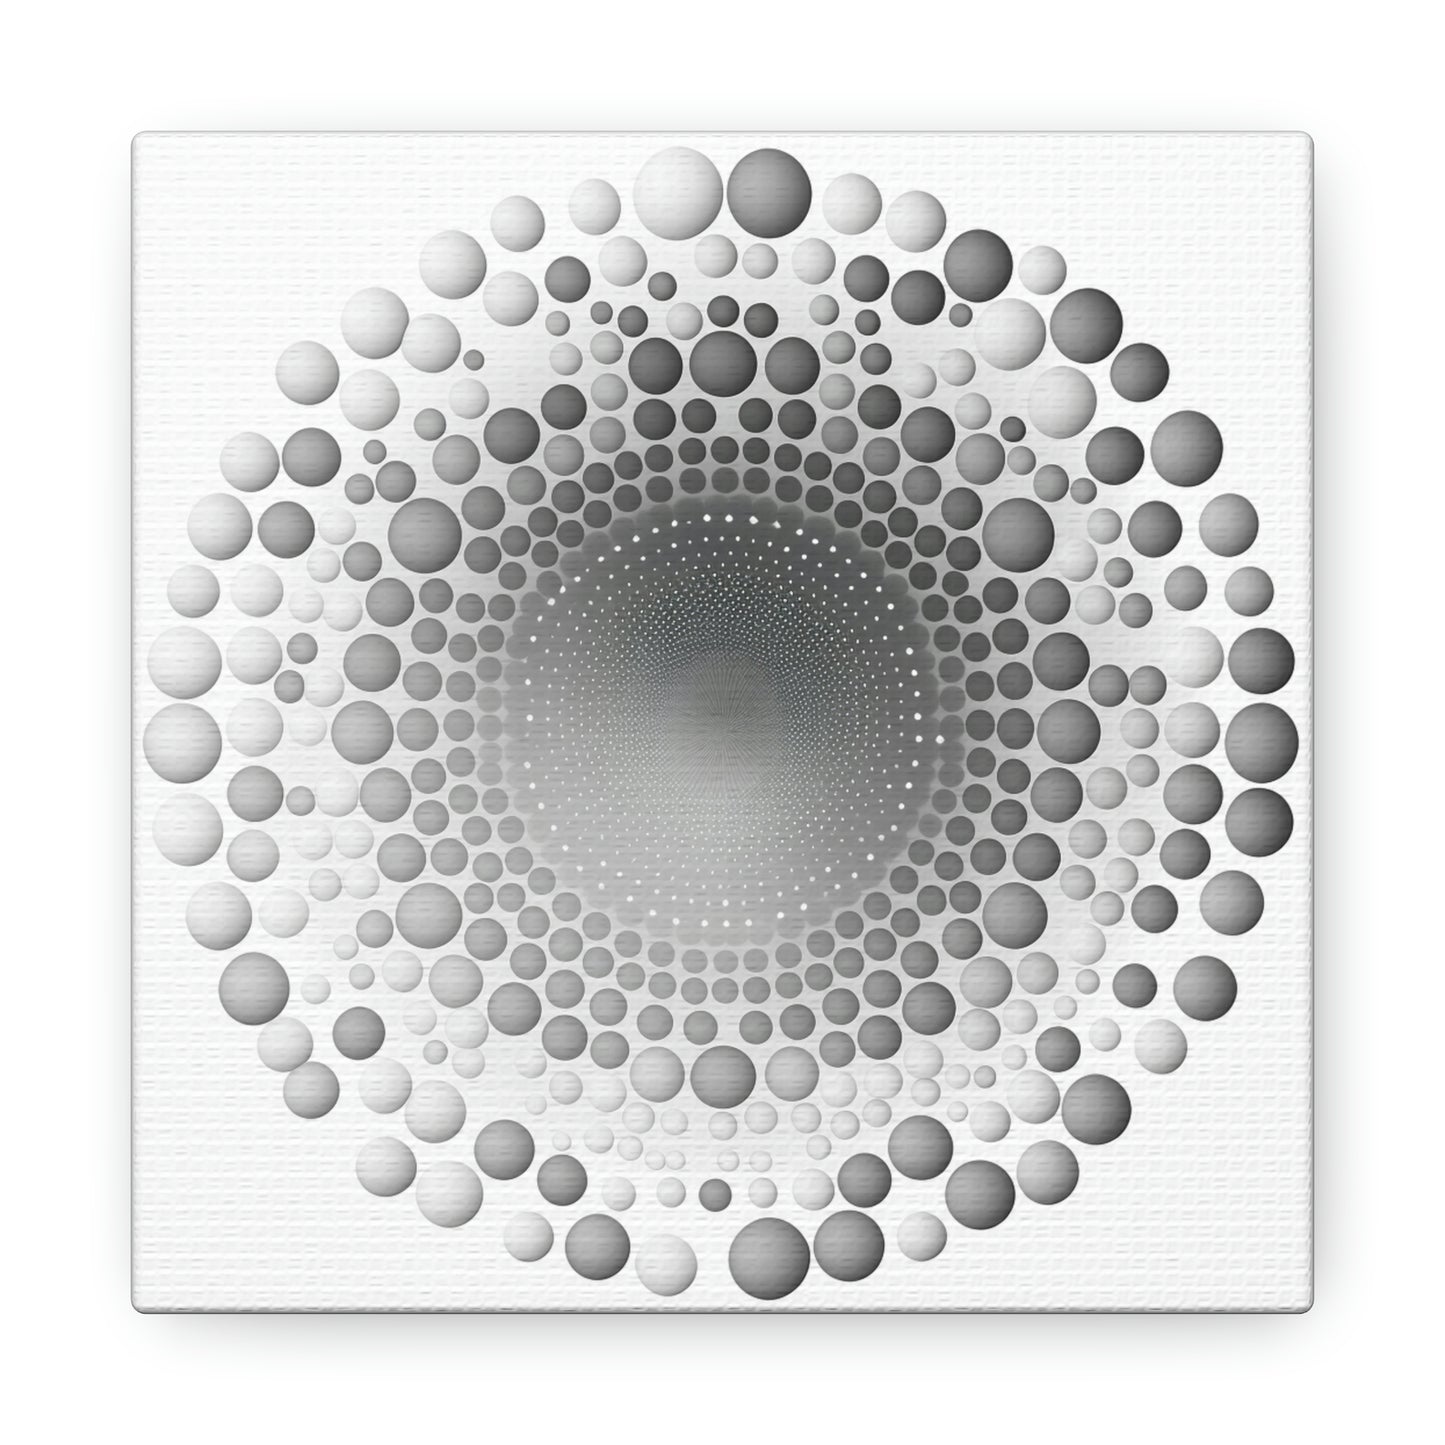 Abstract circle art